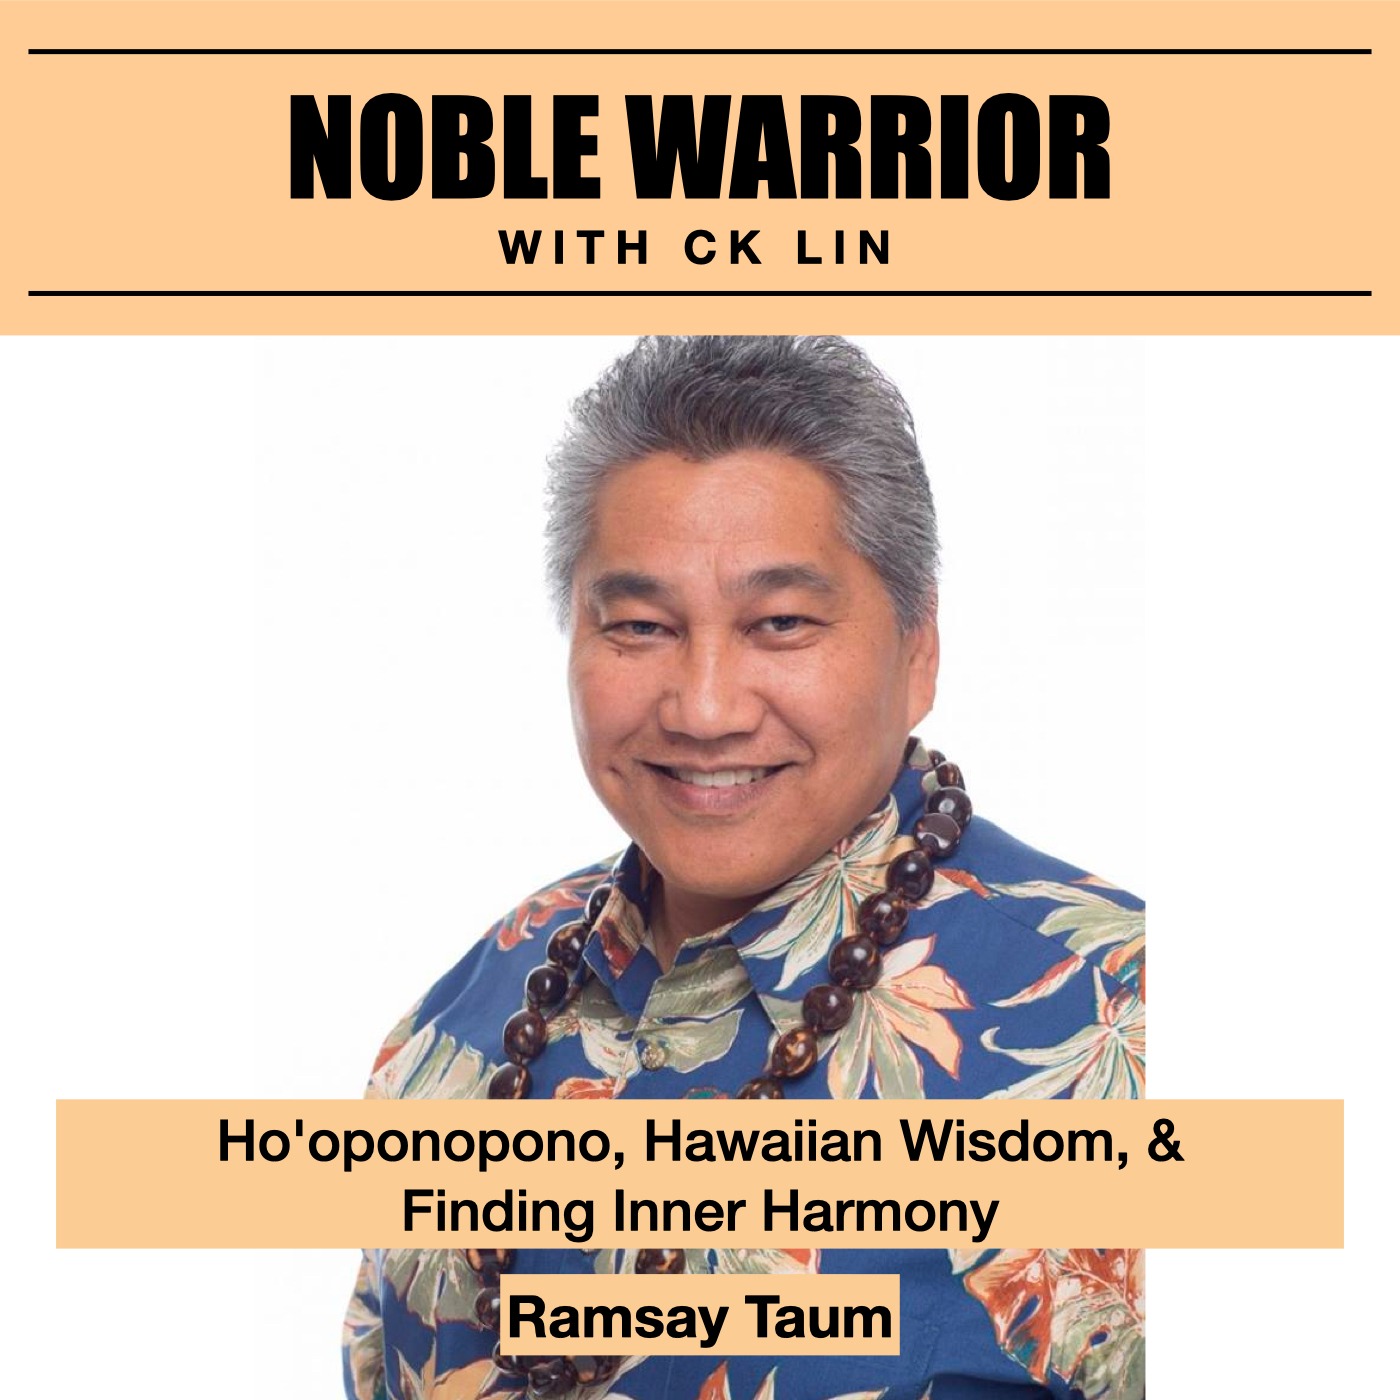 142 Ramsay Taum: Hoponopono, Hawaiian wisdom, and finding inner harmony